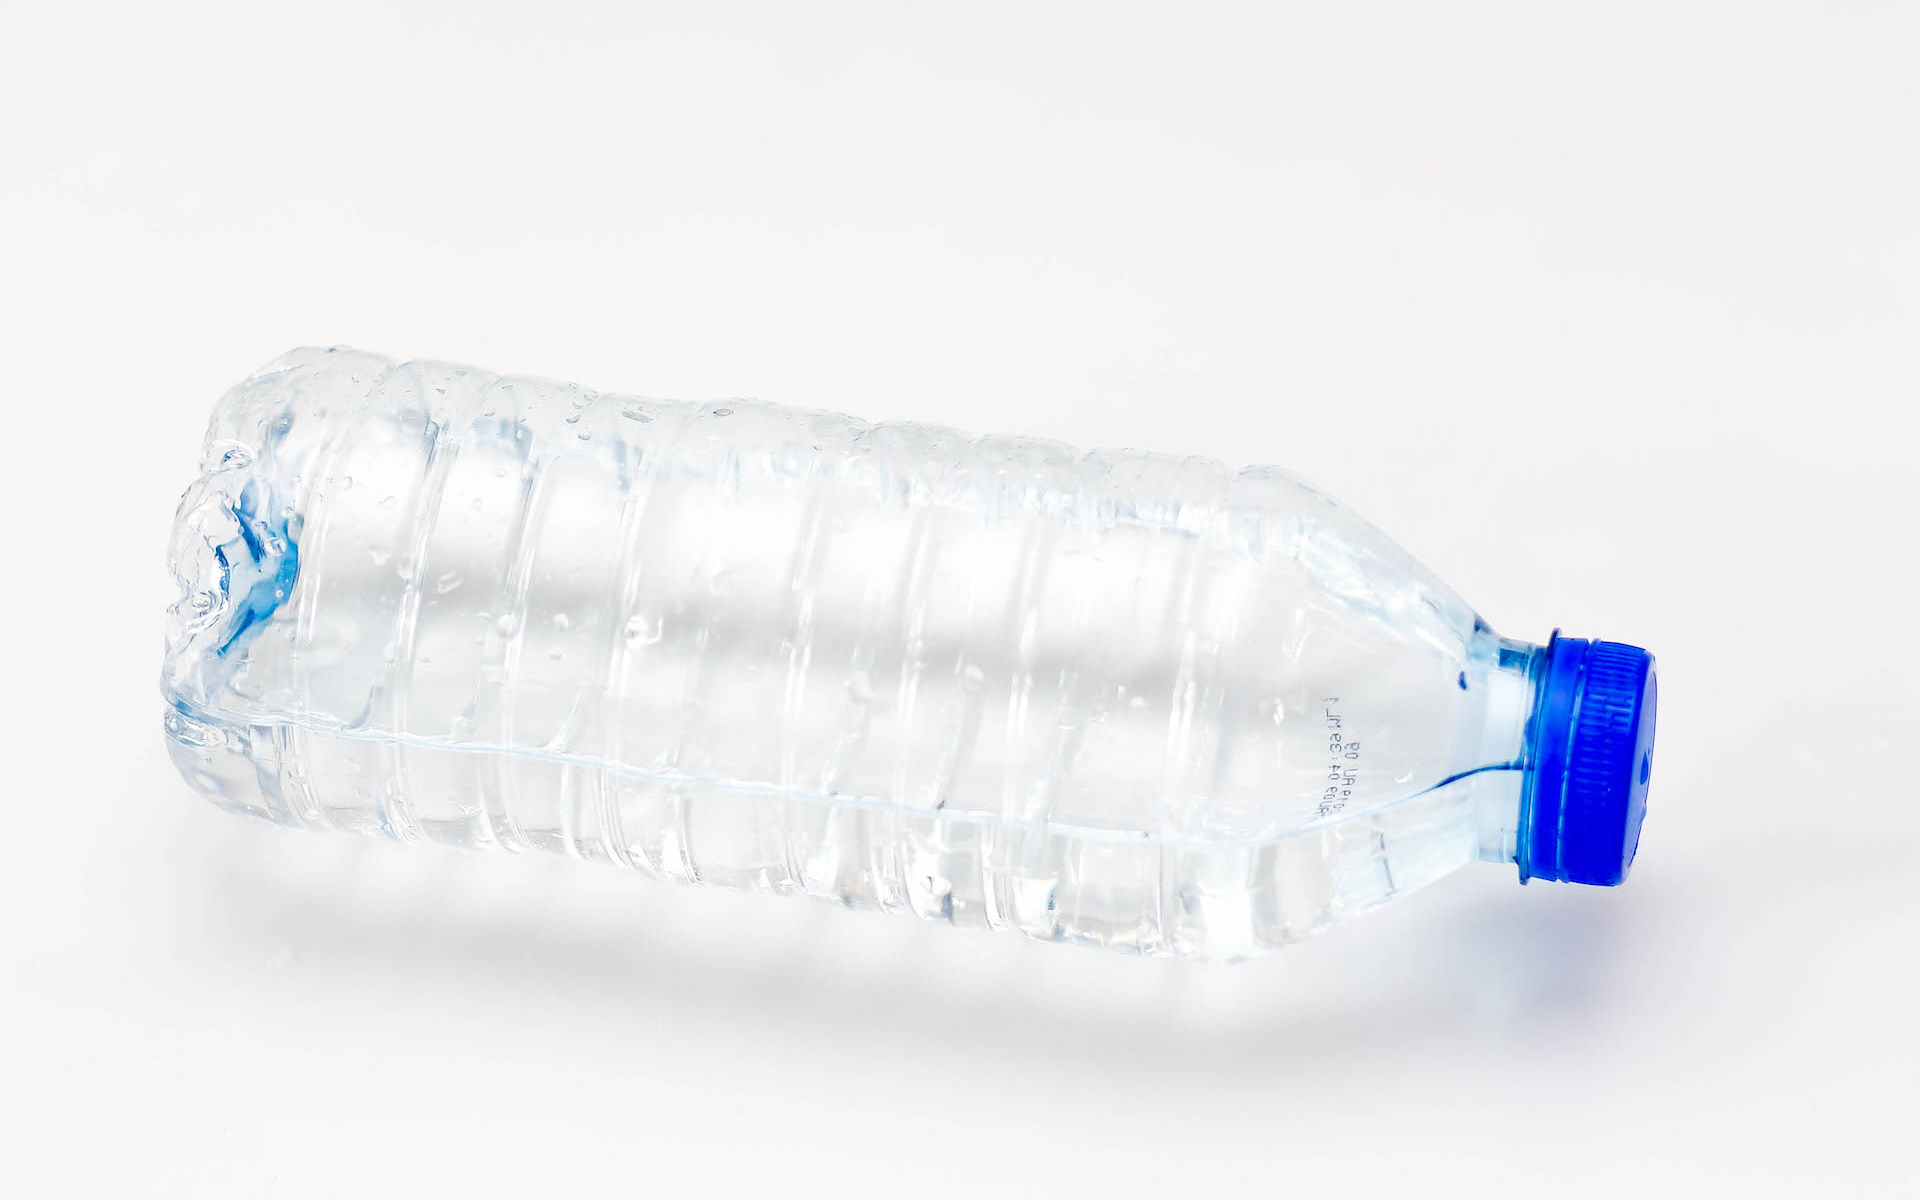 L'eau en bouteille est pire que tout pour la santé : on boit du plastique -  Numerama